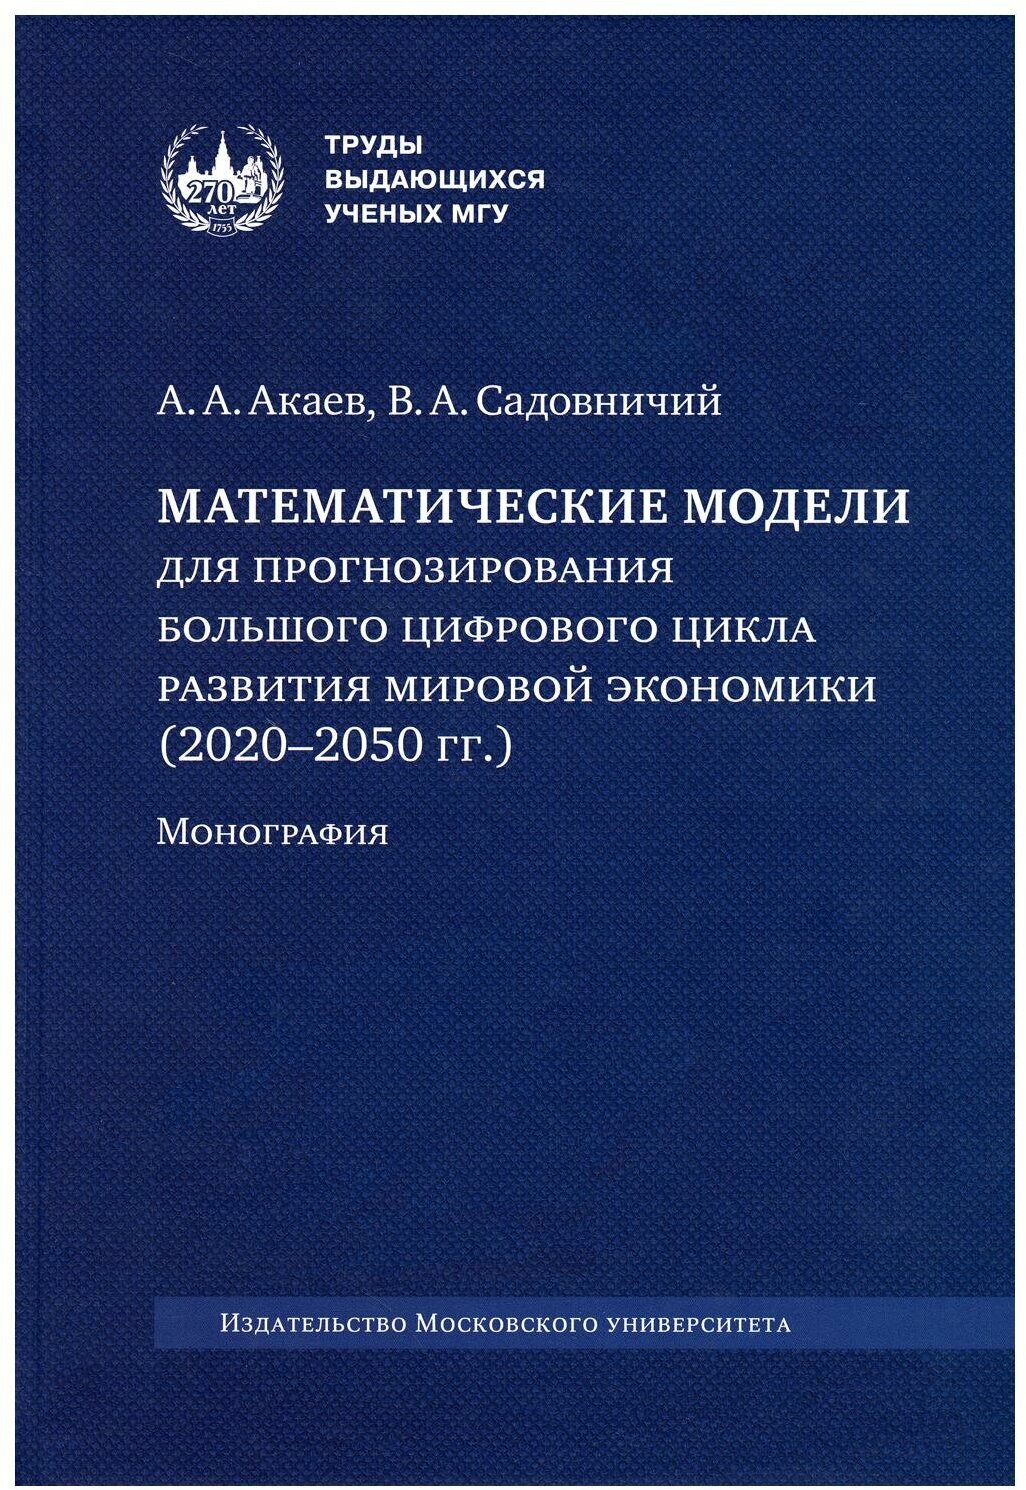 Математические модели для прогнозирования большого цифрового цикла развития мировой экономики (2020-2050 годов): монография